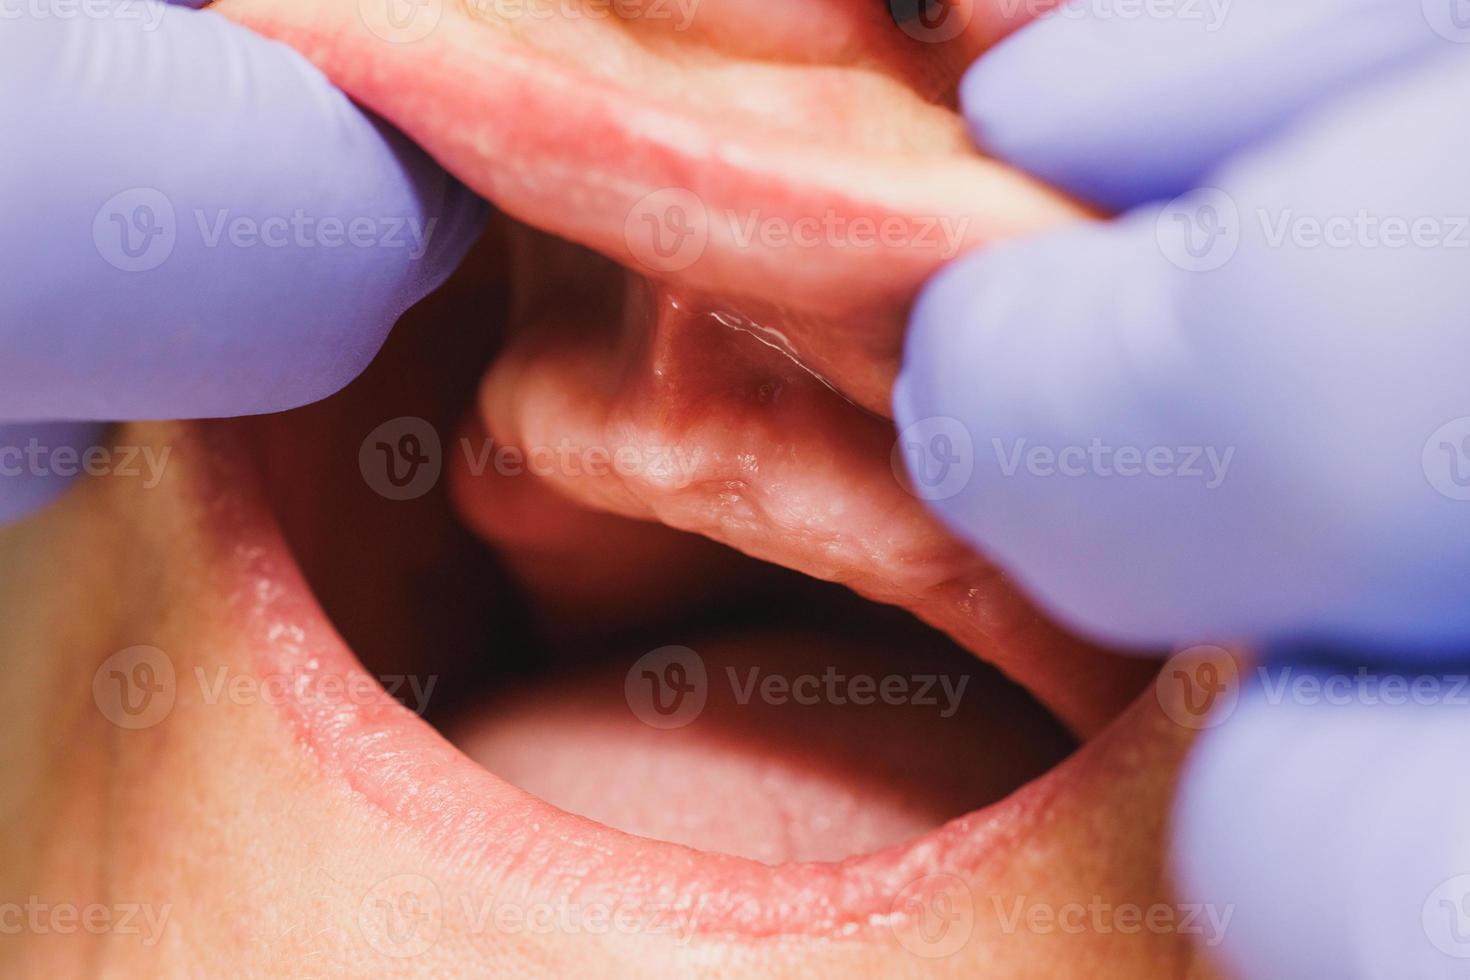 primer plano de un proceso dental de implantación de dientes a un paciente foto